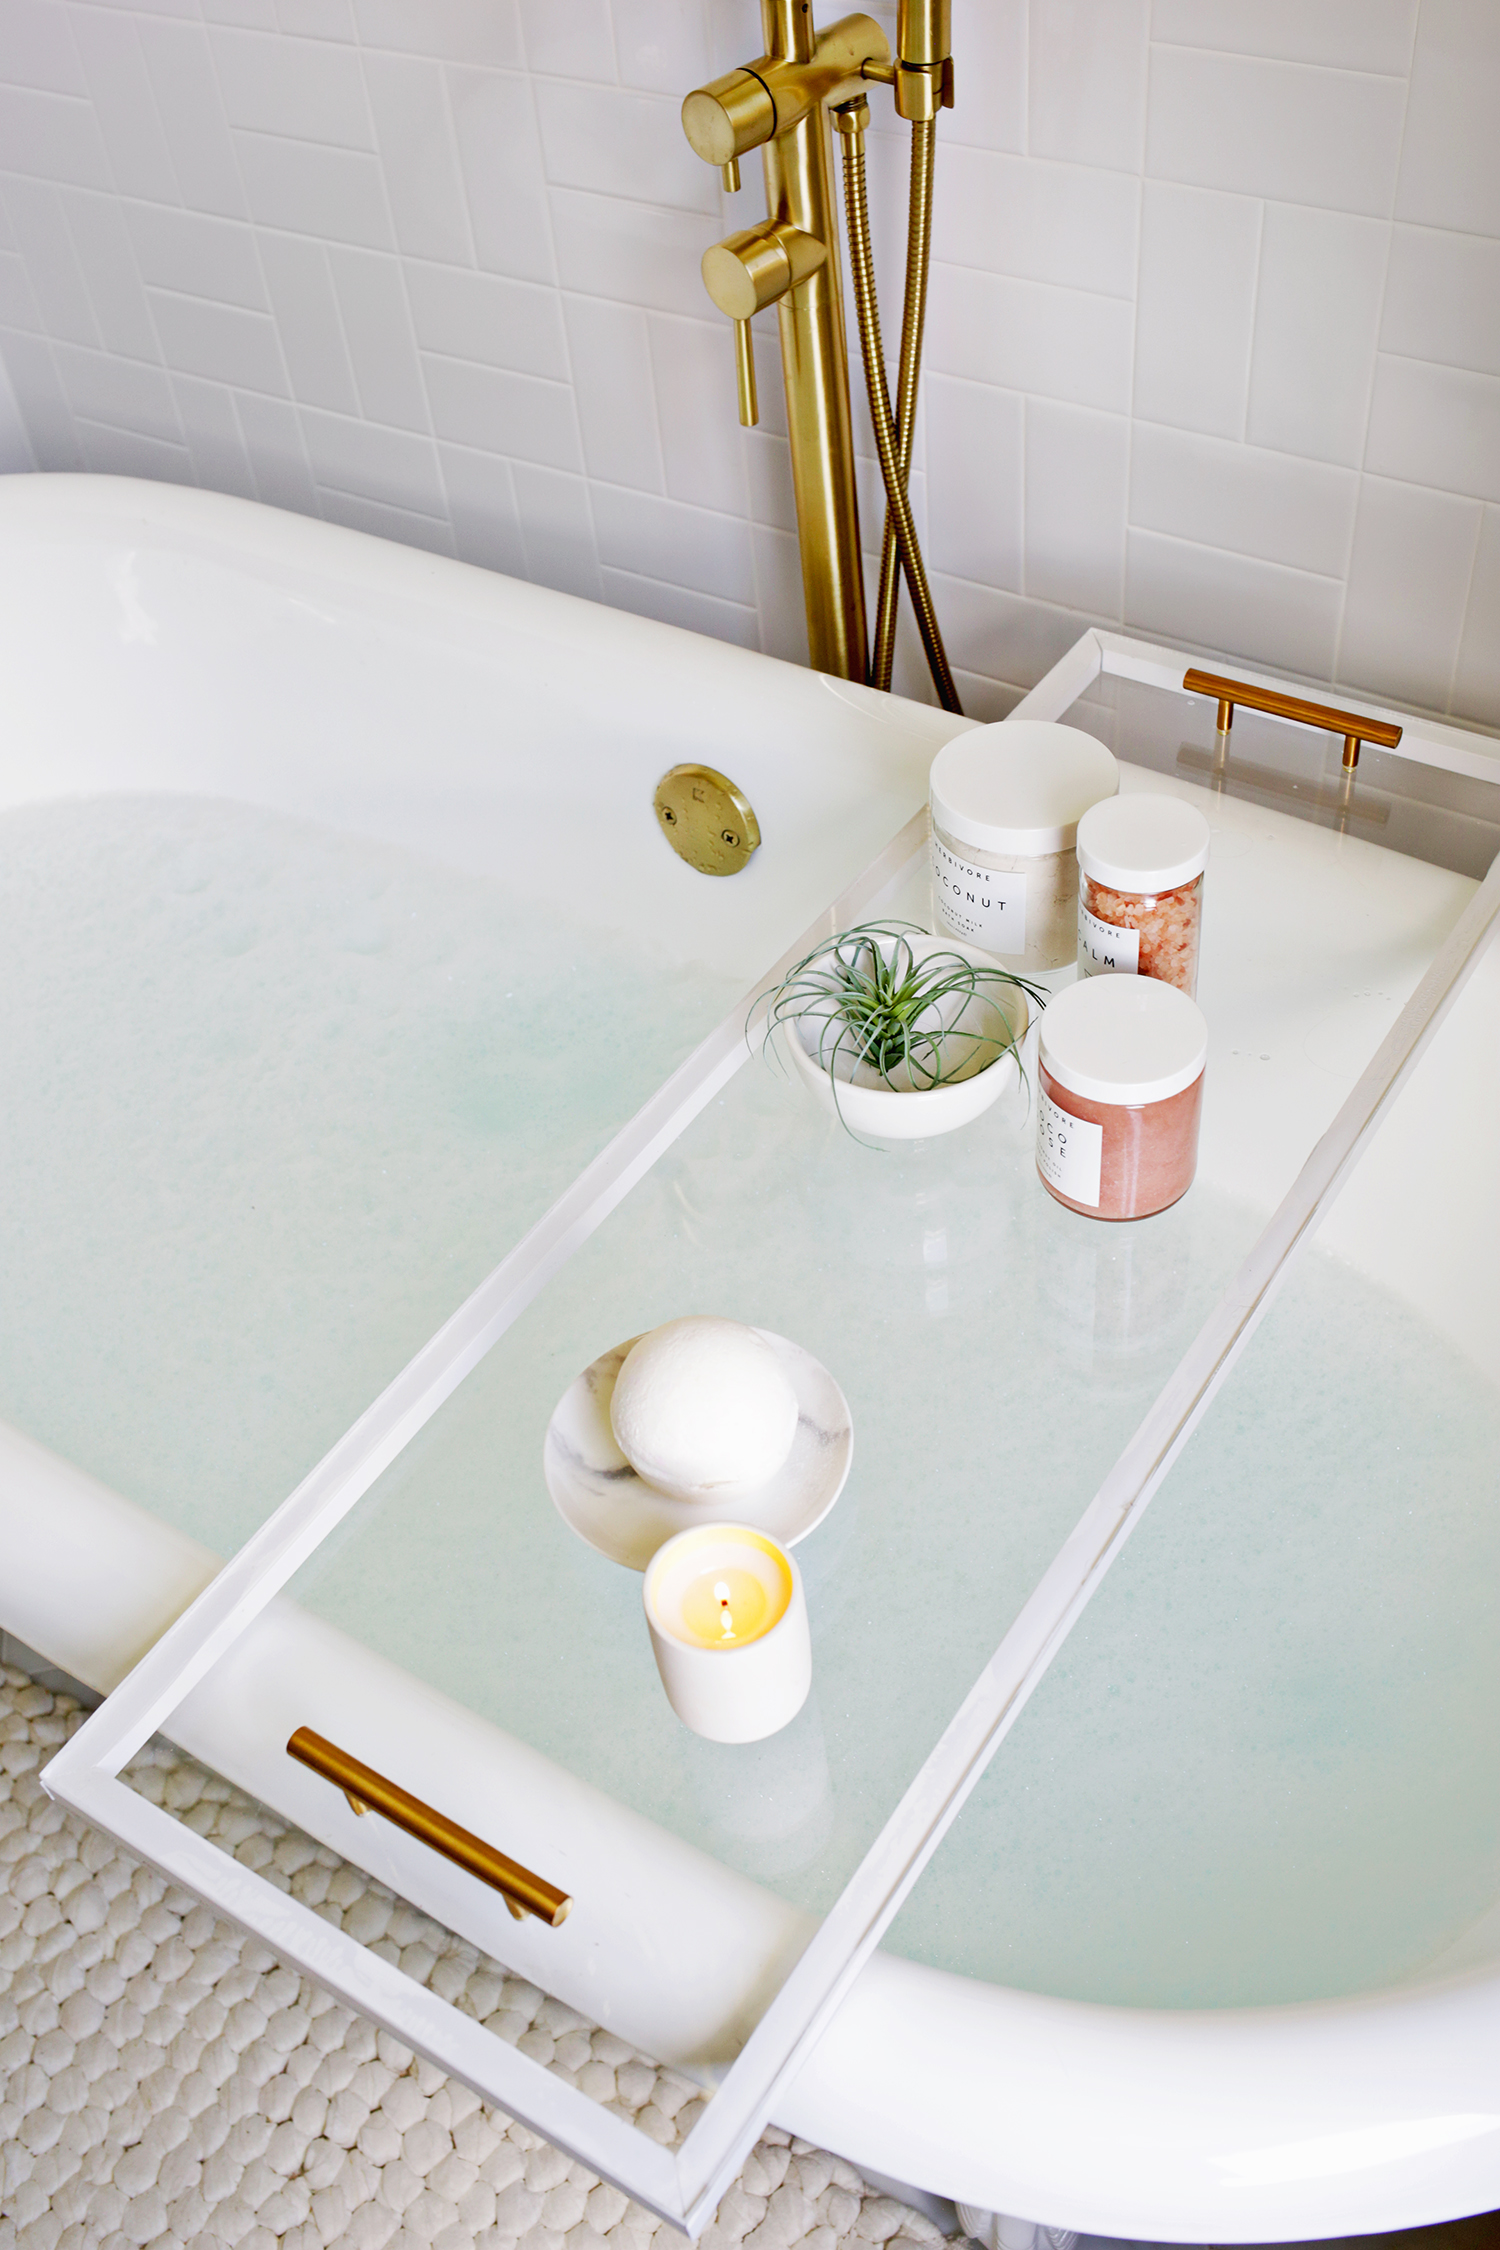 DIY lucite bathtub caddy or tray (via abeautifulmess.com)